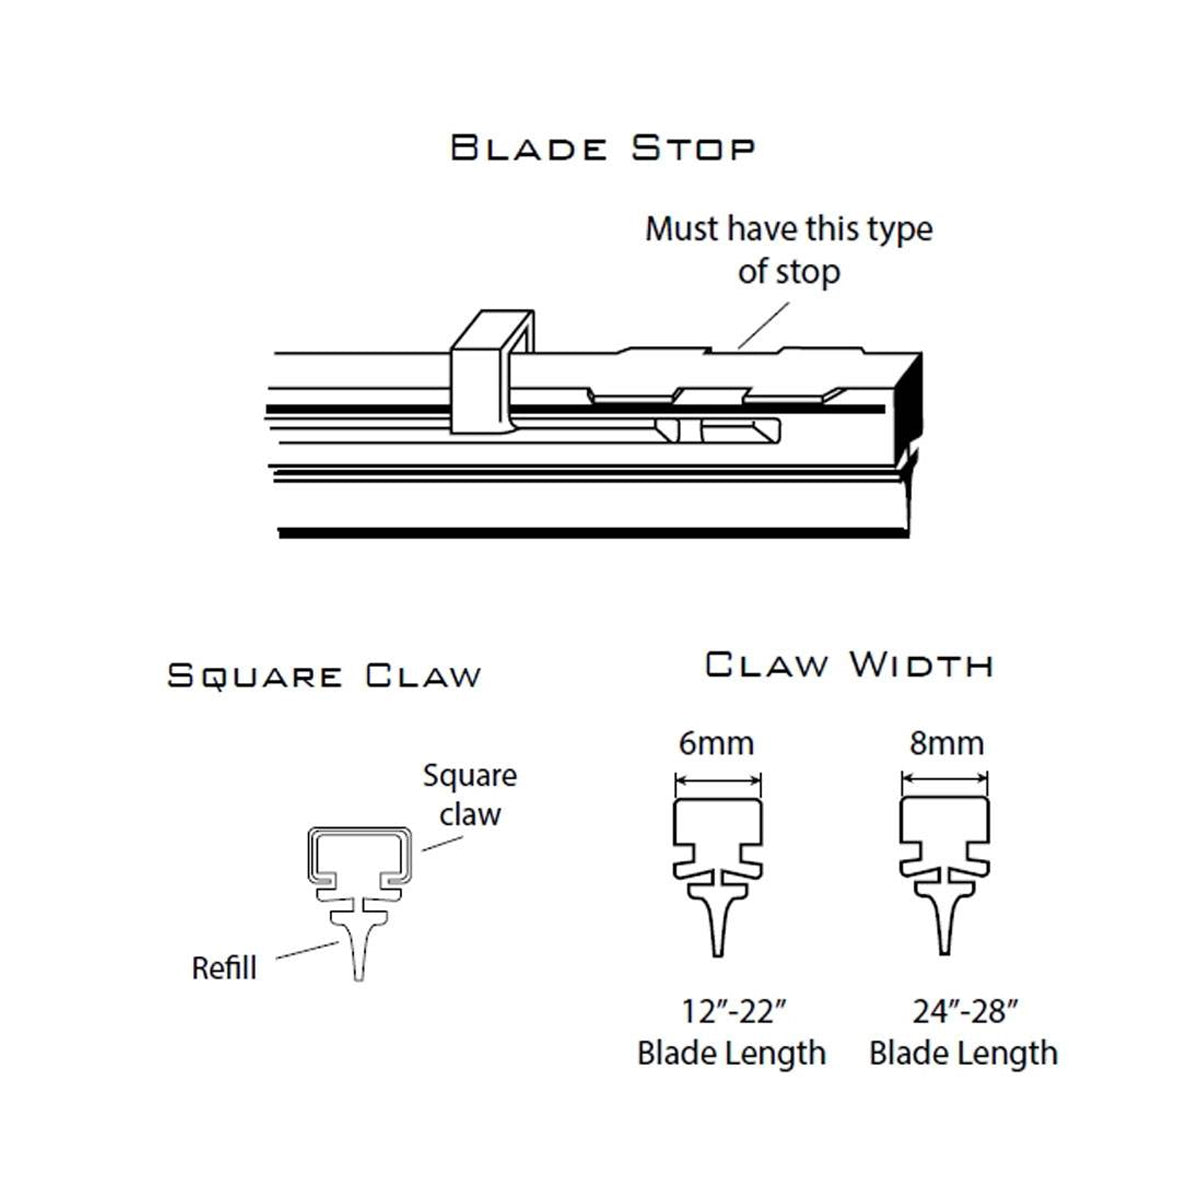 PIAA SILICONE WIPER REFILL for Radix & Aero Vogue Blade ( 24" ) ( 8mm ) (Barcode: 722935940601 )